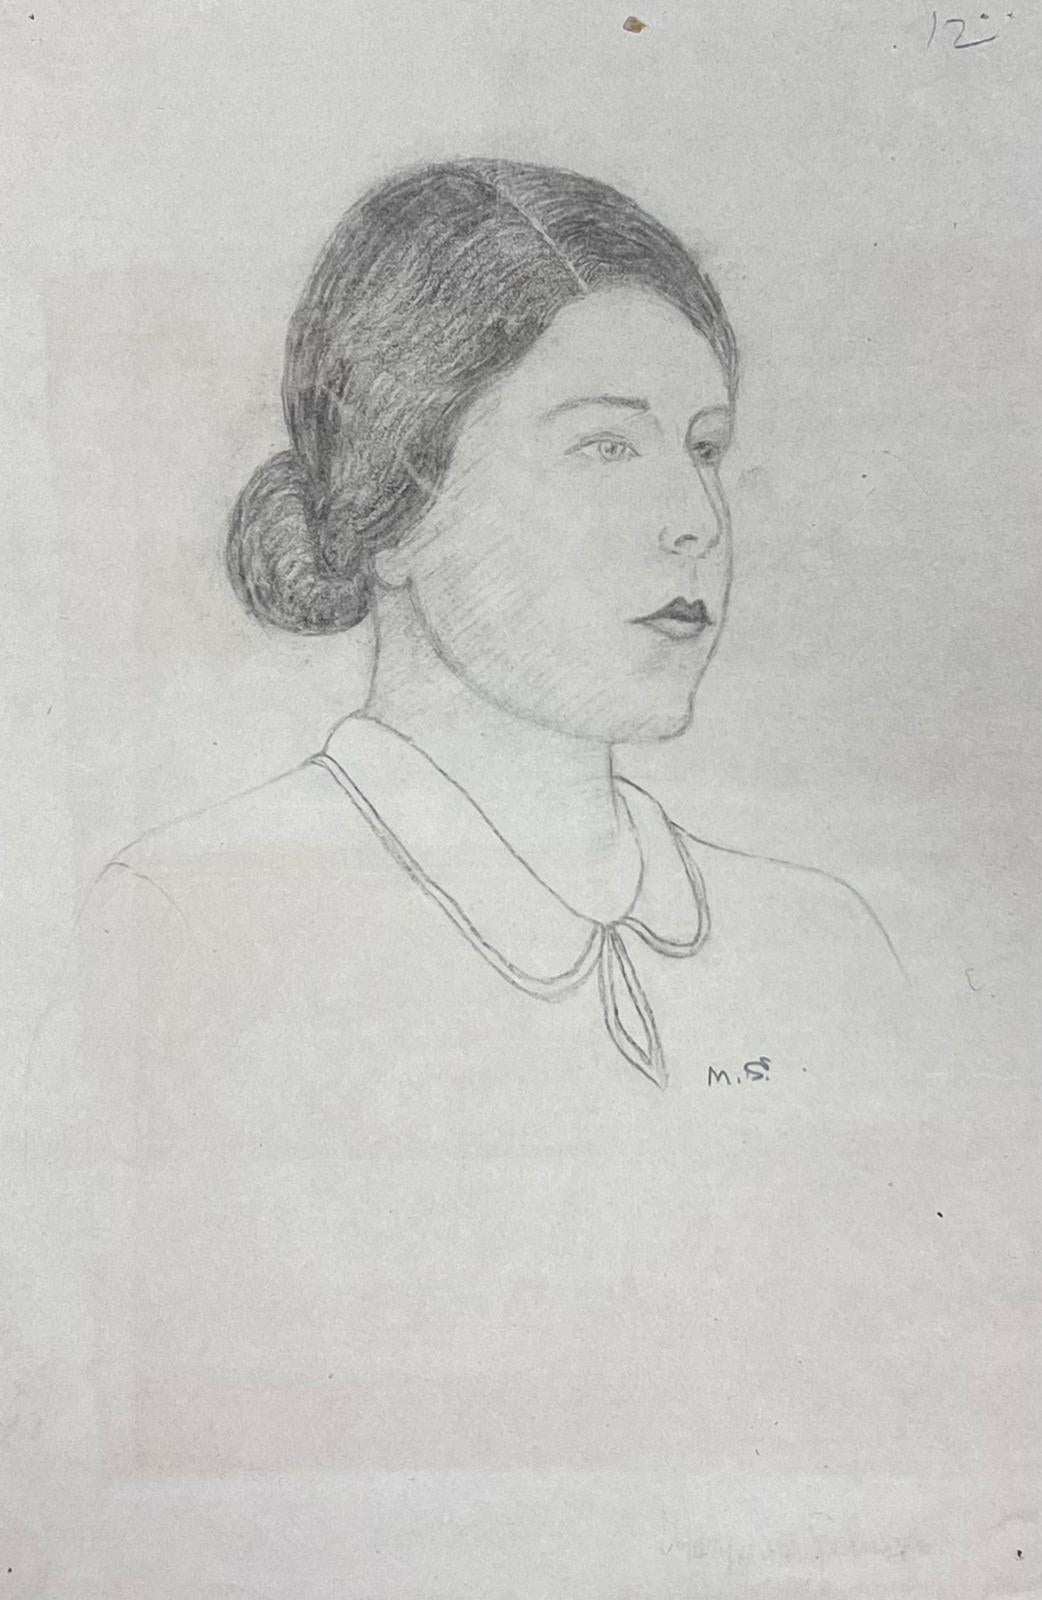 Marjorie Schiele (1913-2008) Portrait Painting – Elegantes Porträt einer jungen Dame, Pariser Schule, Mitte des 20. Jahrhunderts, gelistete Künstlerin